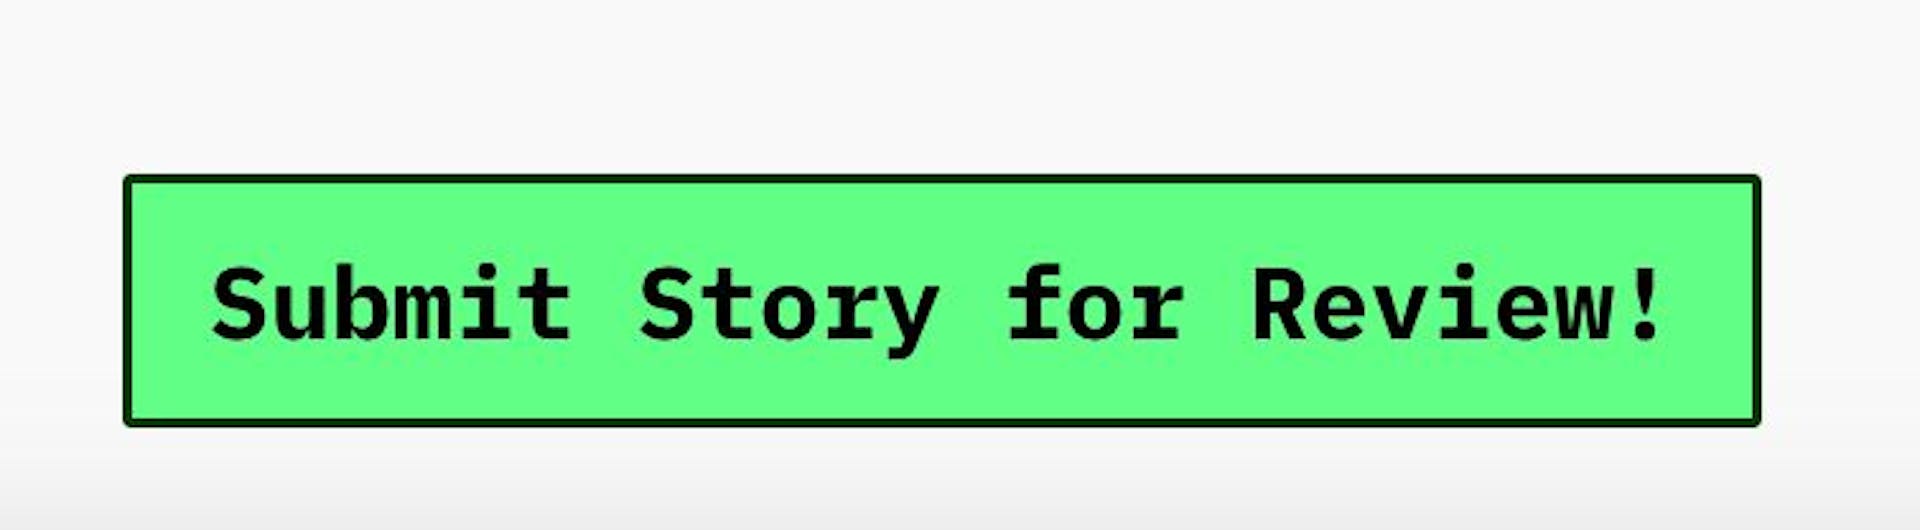 Clique neste botão nas configurações de qualquer história e você poderá enviar seu rascunho para editores humanos para revisão.